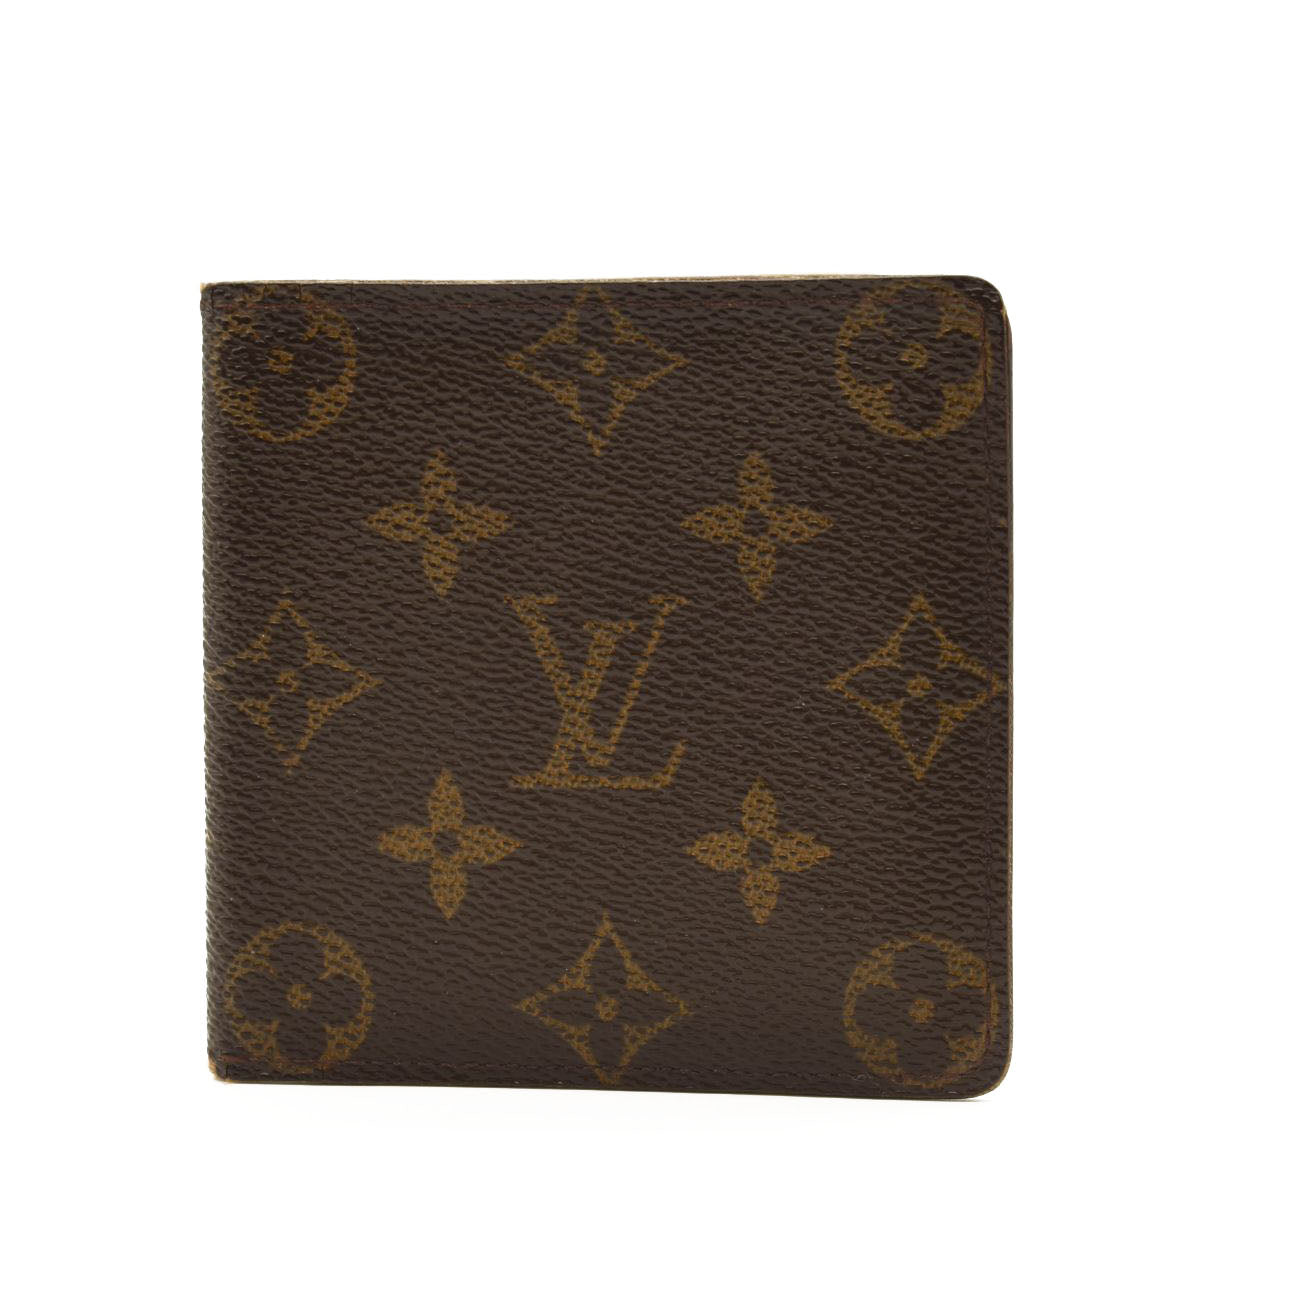 Louis Vuitton Monogram Canvas Porte-Billets Wallet Louis Vuitton